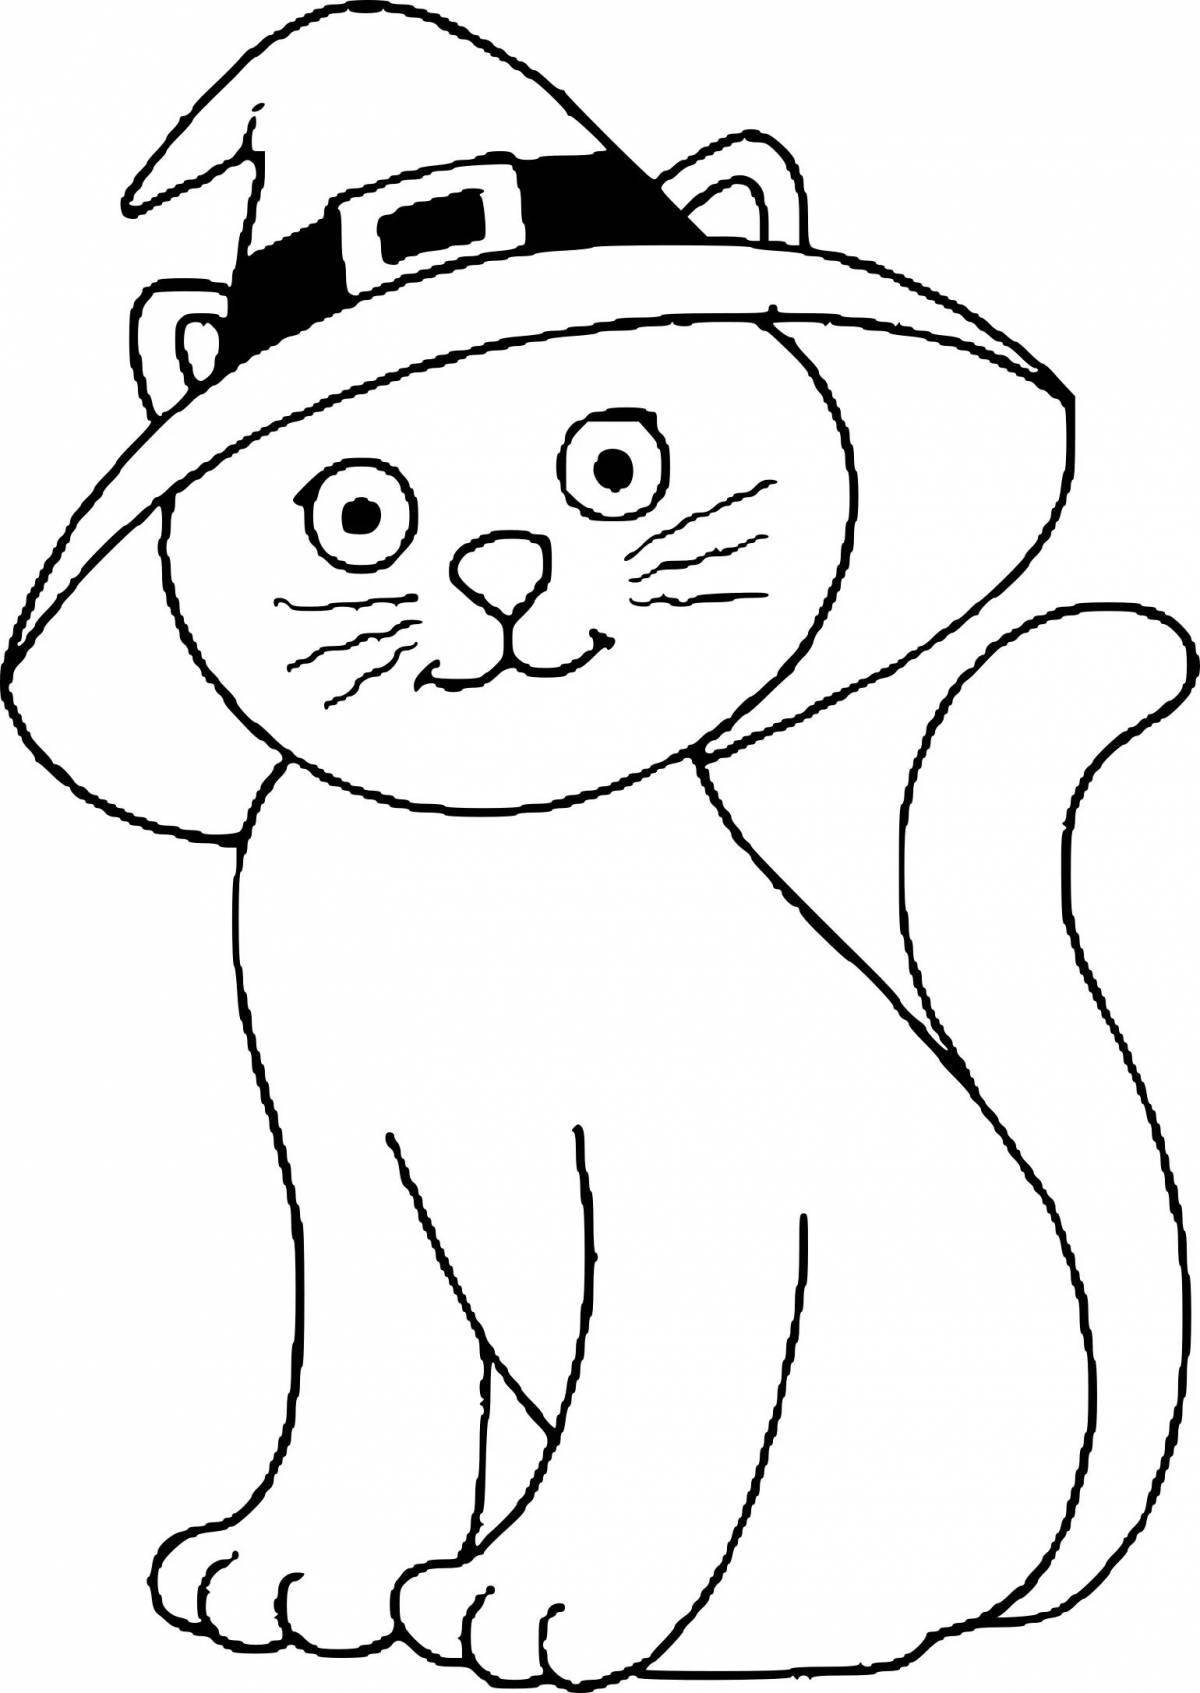 Раскраска юмористический кот в шляпе